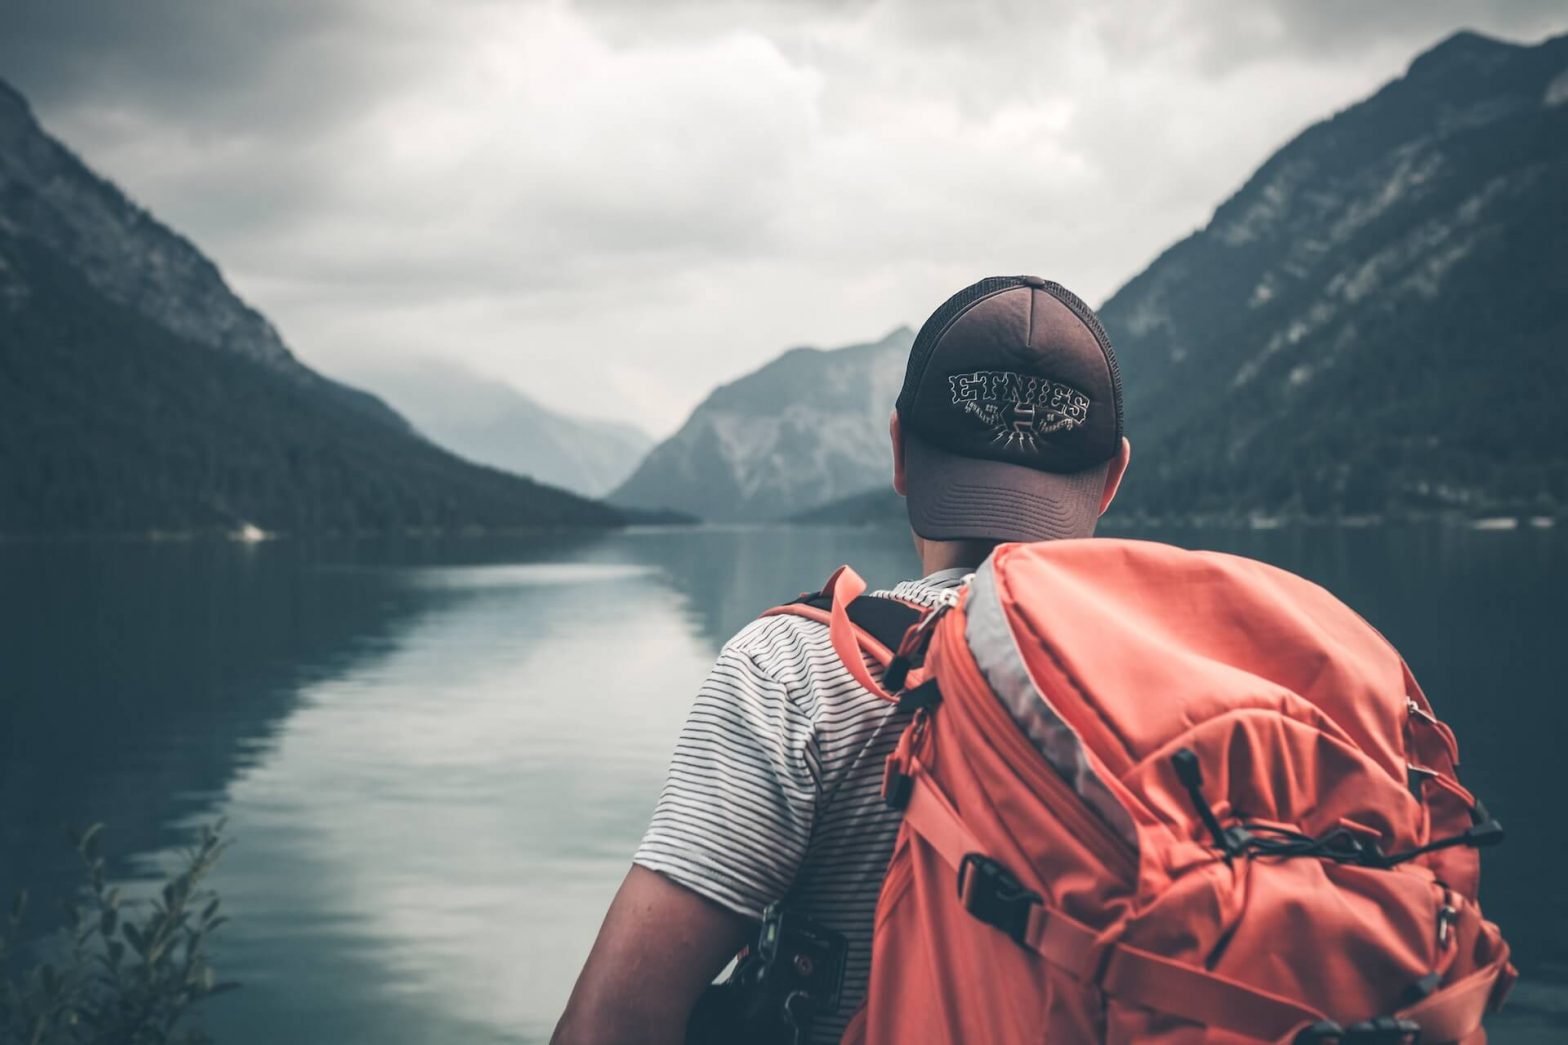 Individuo con mochila, de pie junto a un sereno lago bordeado por majestuosas montañas, capturando la belleza de la naturaleza y la exploración al aire libre.